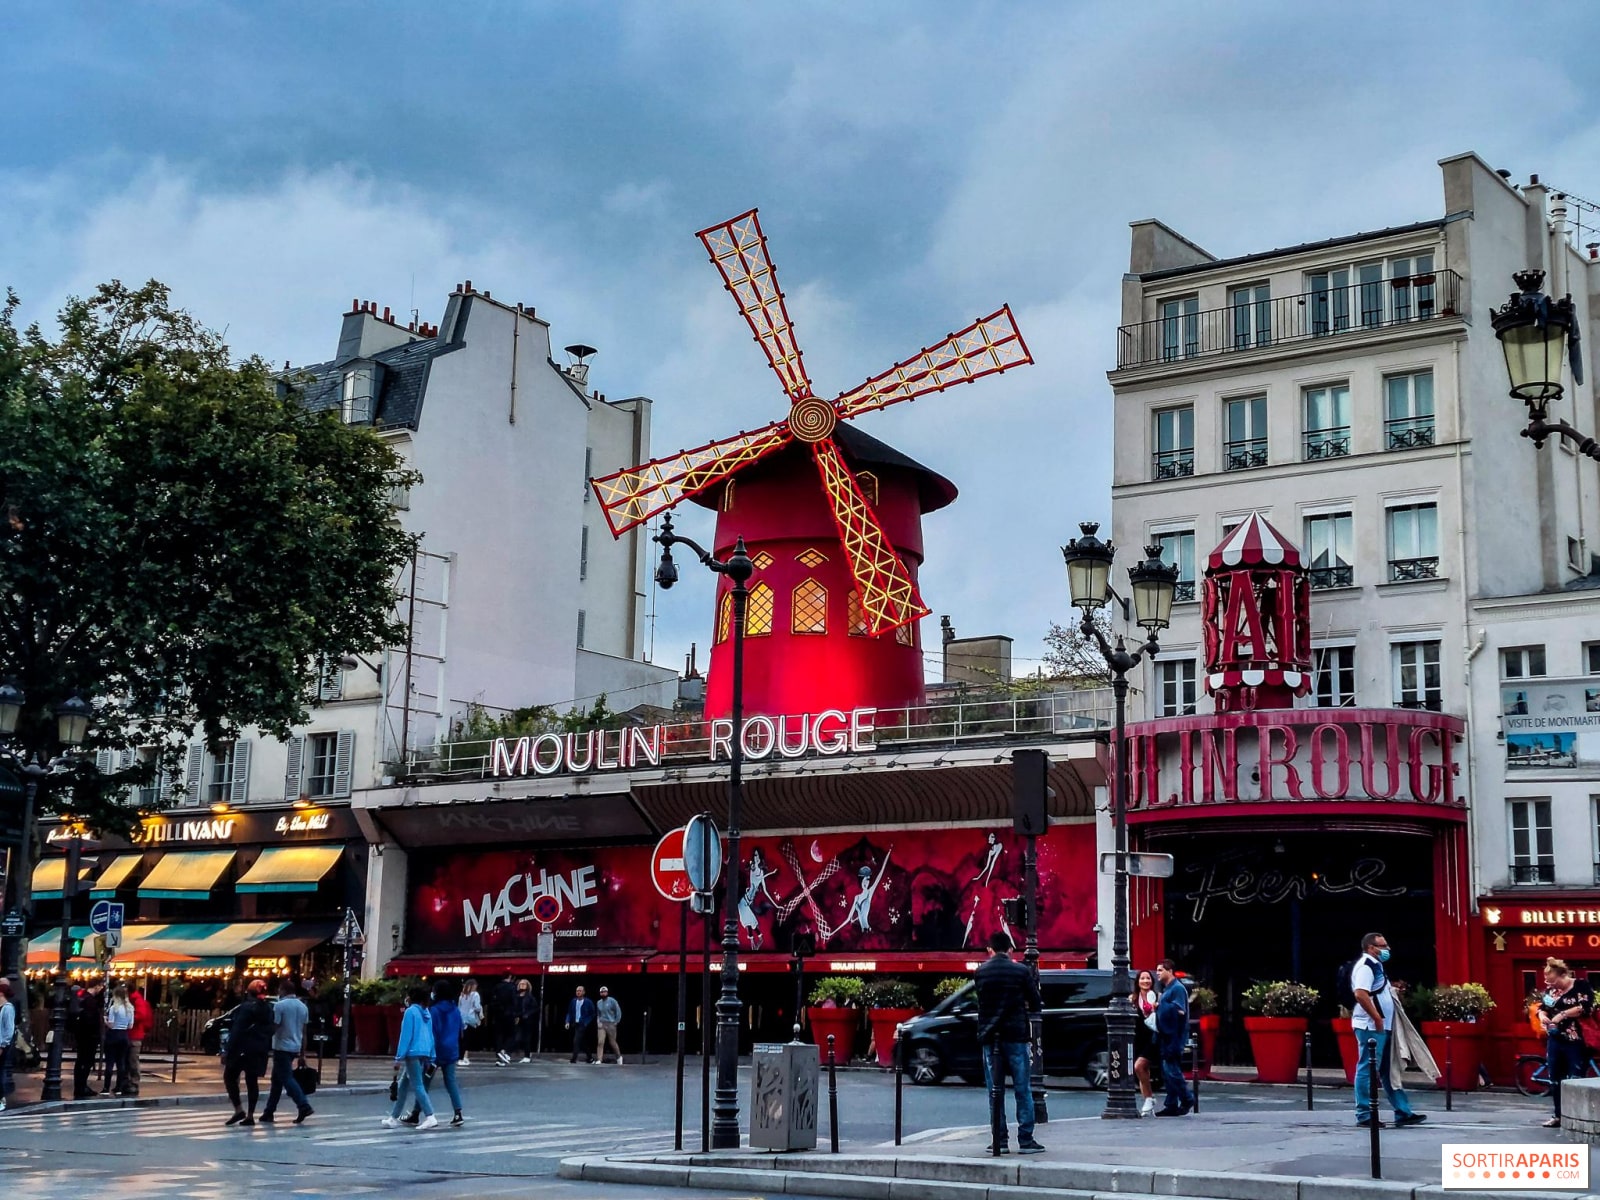 Festlicher Aufenthalt in Paris - Hotels in der Nähe des Moulin Rouge